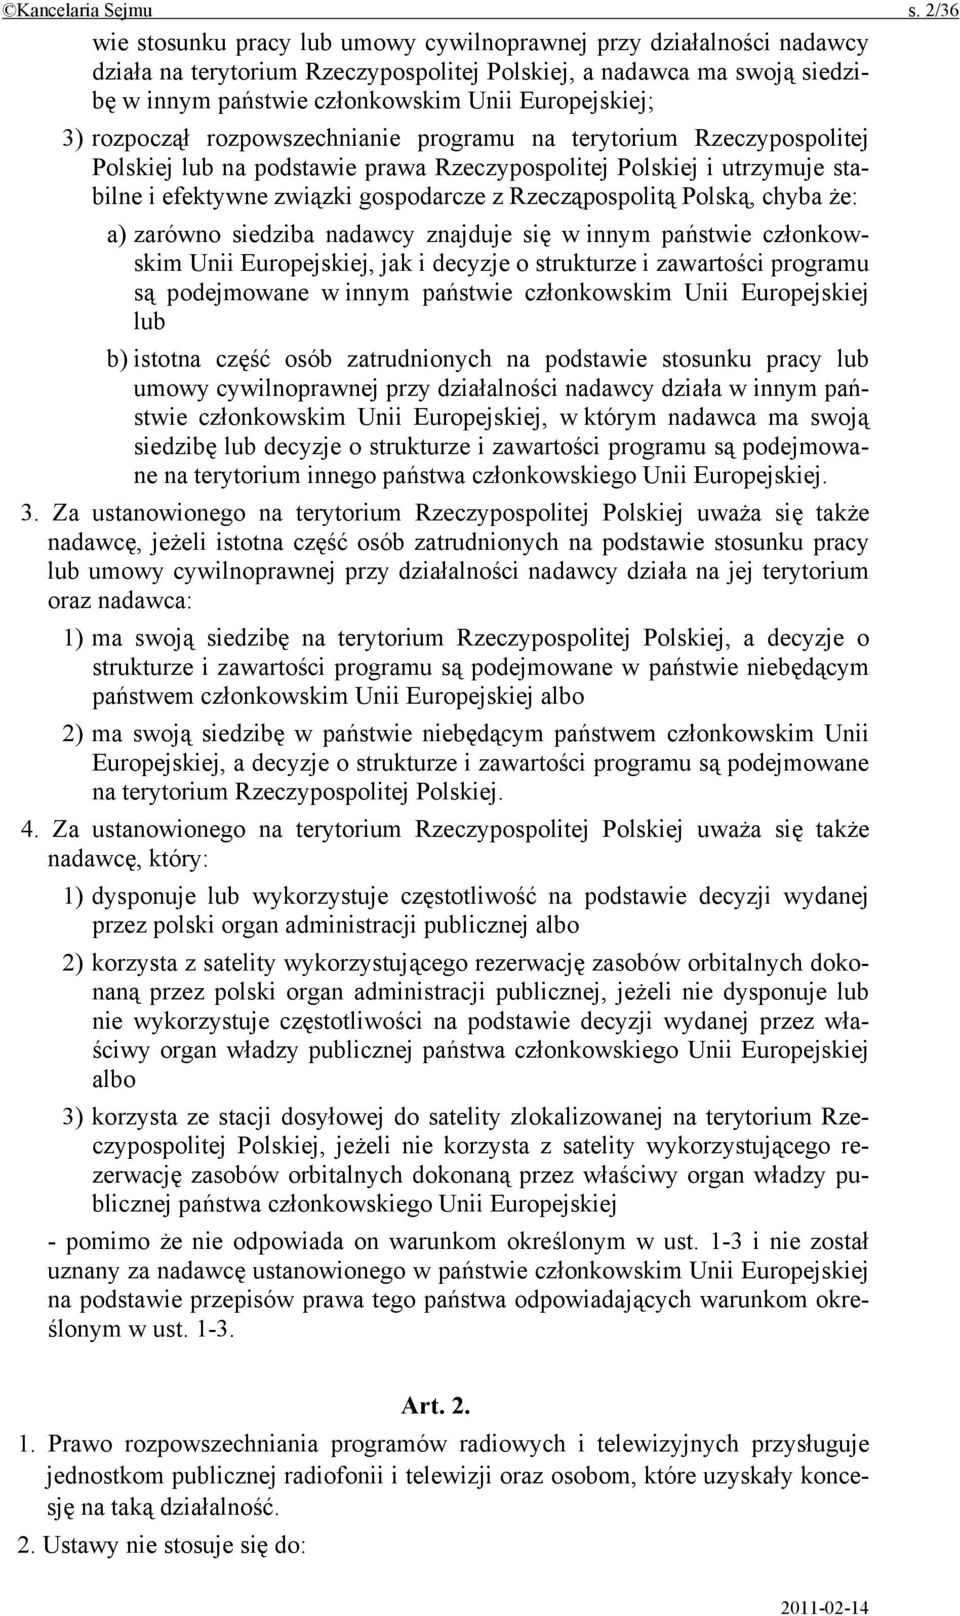 3) rozpoczął rozpowszechnianie programu na terytorium Rzeczypospolitej Polskiej lub na podstawie prawa Rzeczypospolitej Polskiej i utrzymuje stabilne i efektywne związki gospodarcze z Rzecząpospolitą